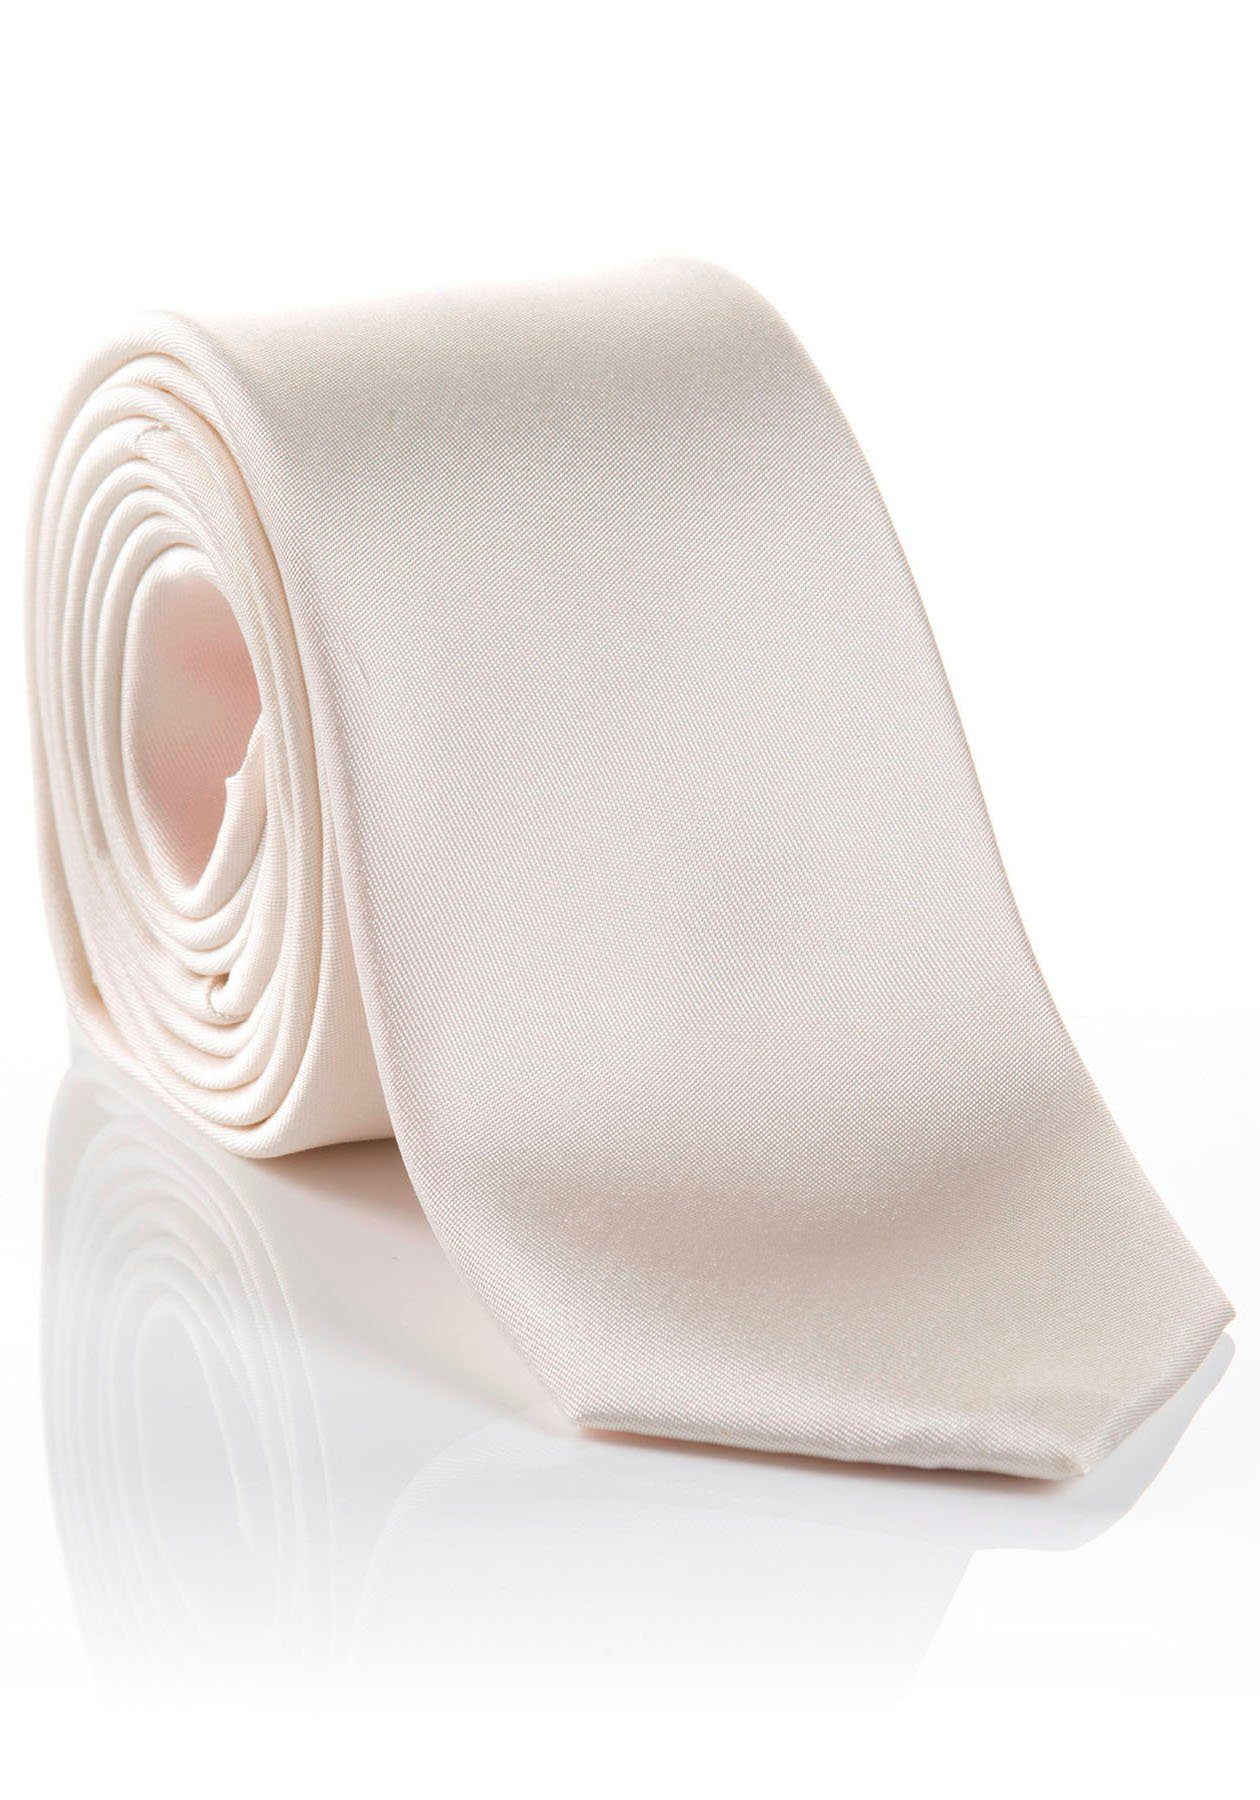 MONTI Krawatte LIVIO Hochwertig Tragekomfort verarbeitete Seidenkrawatte mit hohem